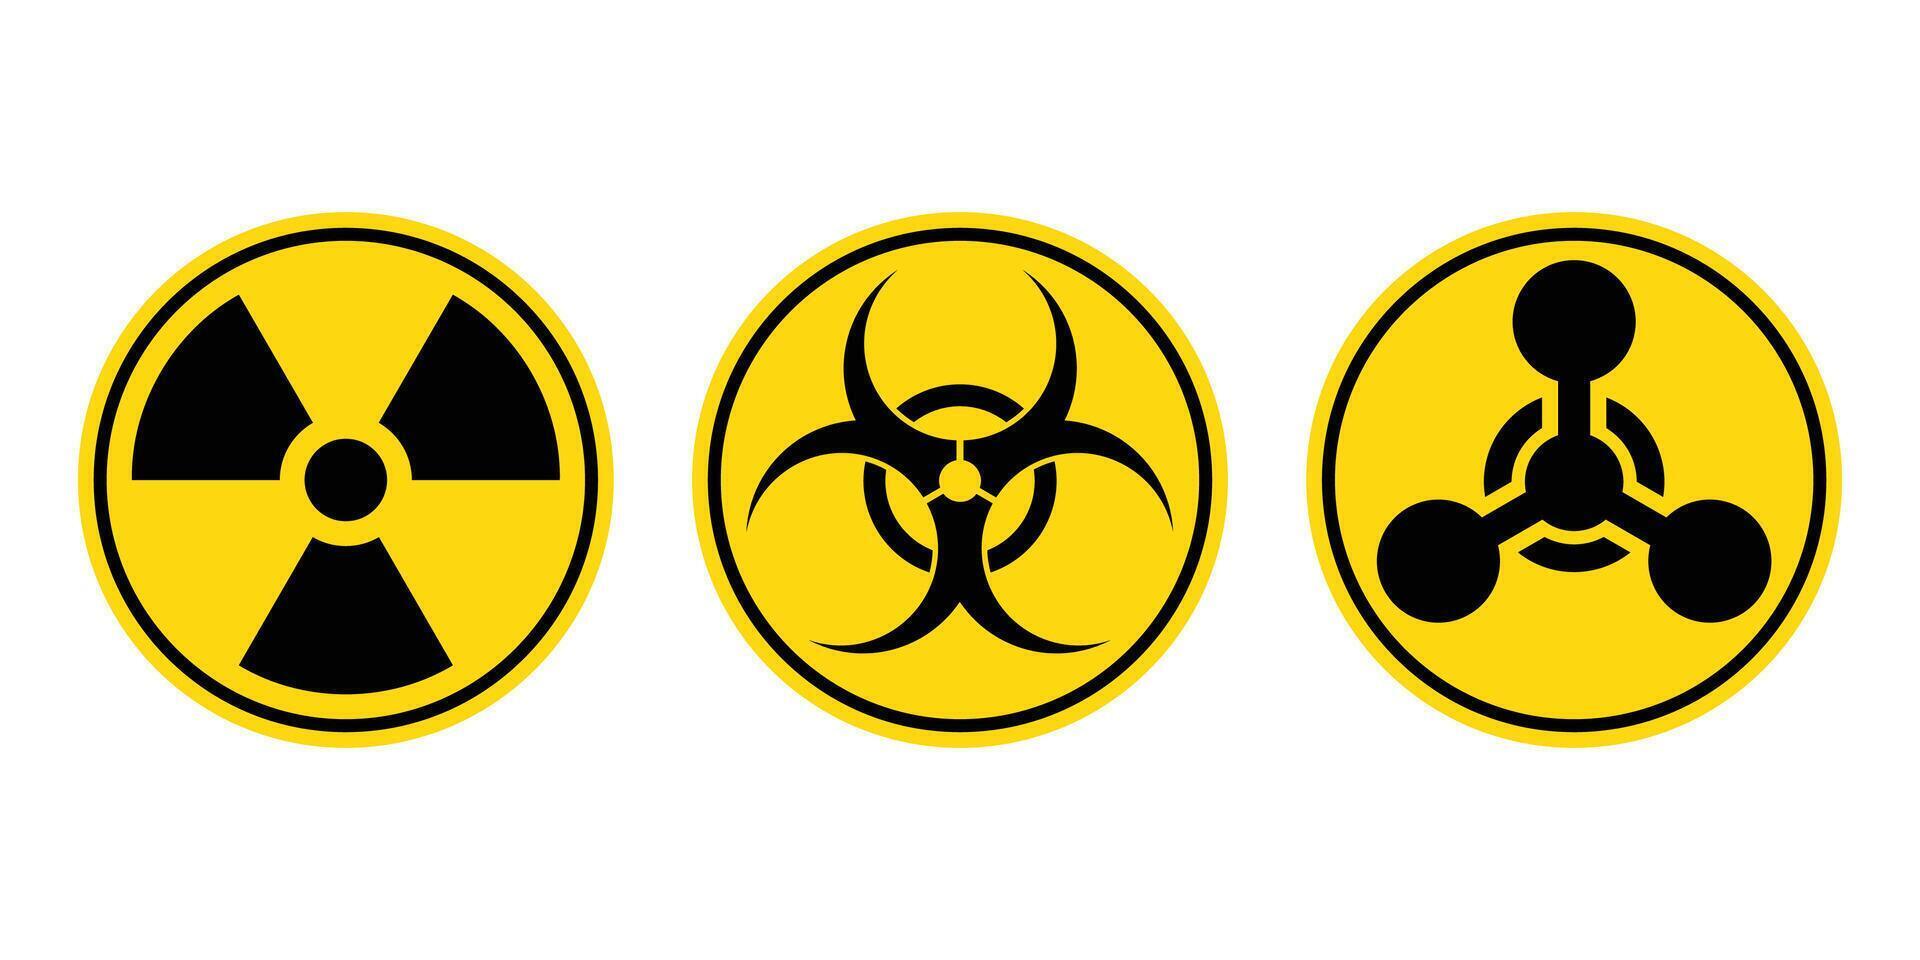 strålning tecken, biohazard tecken, kemisk vapen tecken. vektor illustration